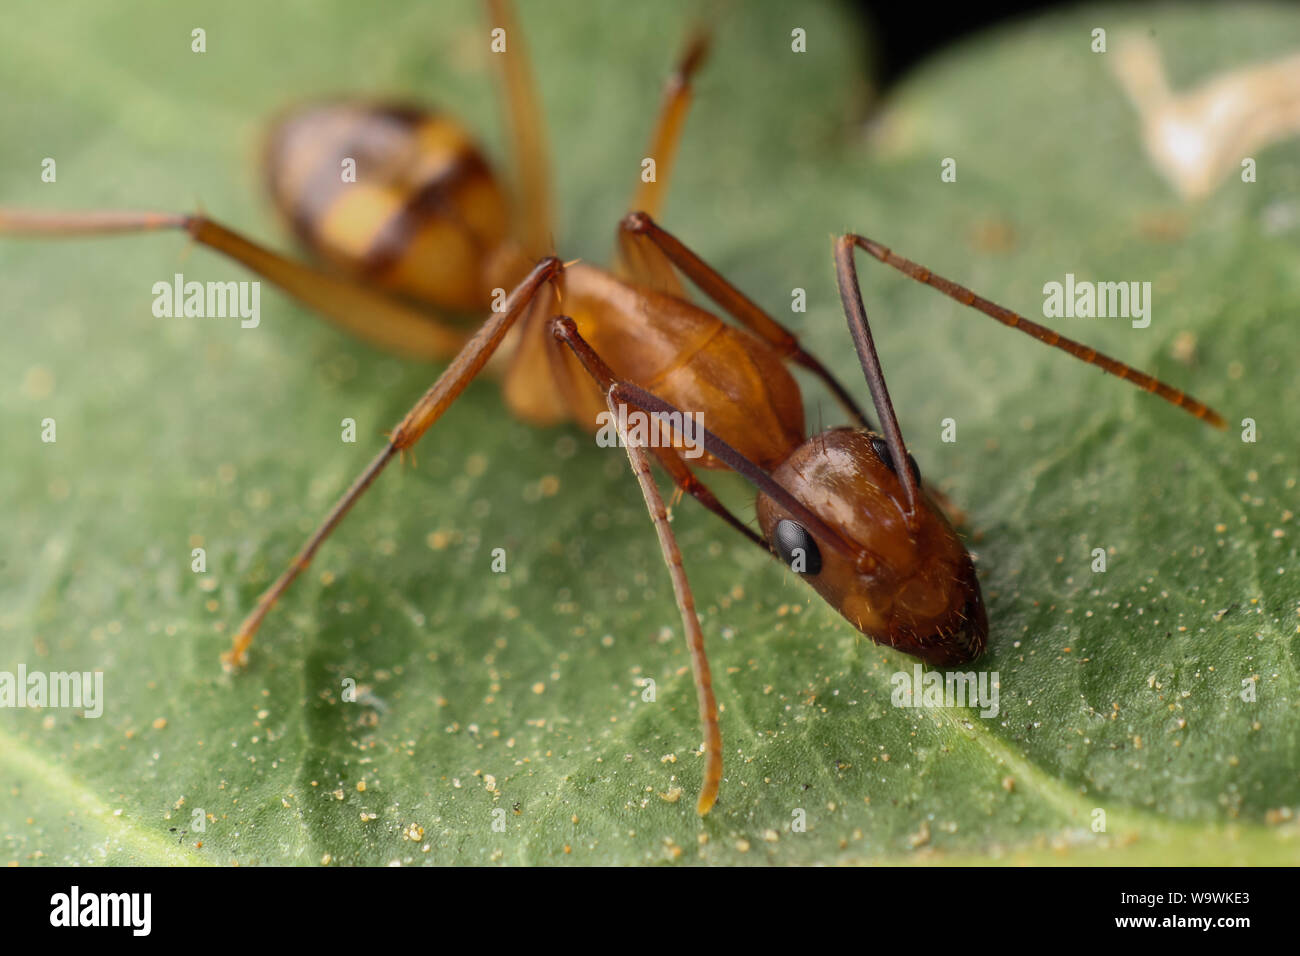 Ant trouvés dans un jardin tropical, close-up de l'insecte Banque D'Images